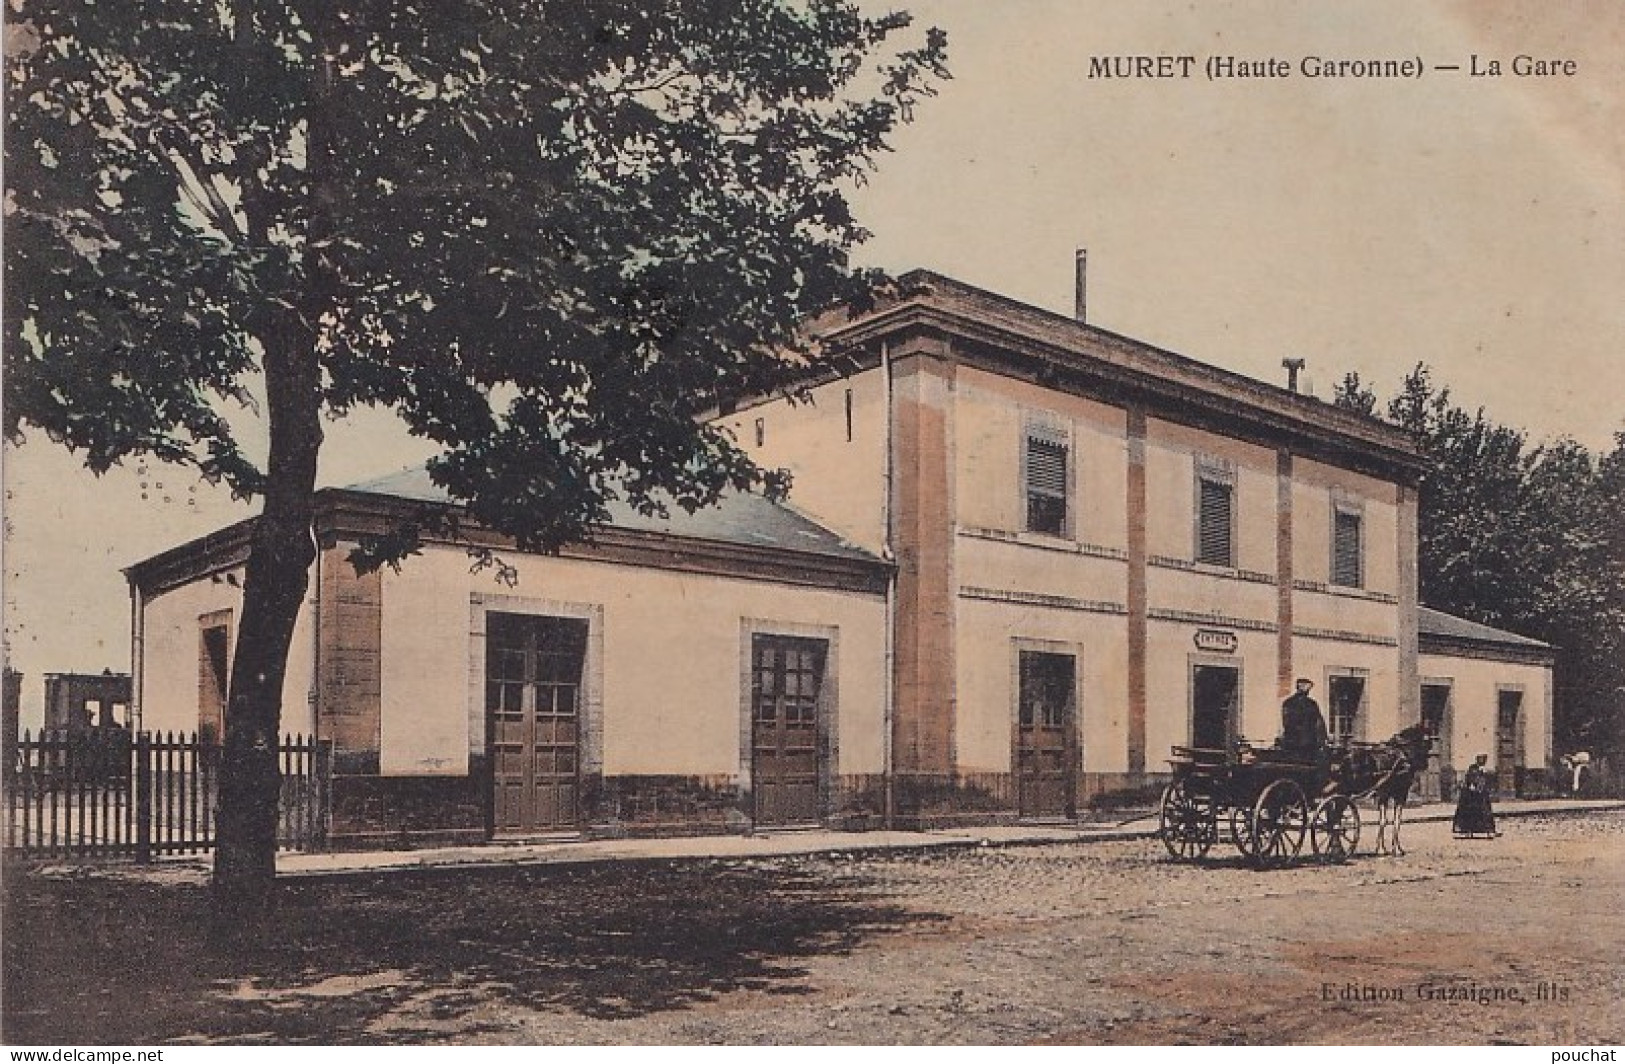 A22-31) MURET - HAUTE GARONNE - LA GARE - ANIMATION -   COLORISEE - EN 1912 -  2 SCANS  - Muret